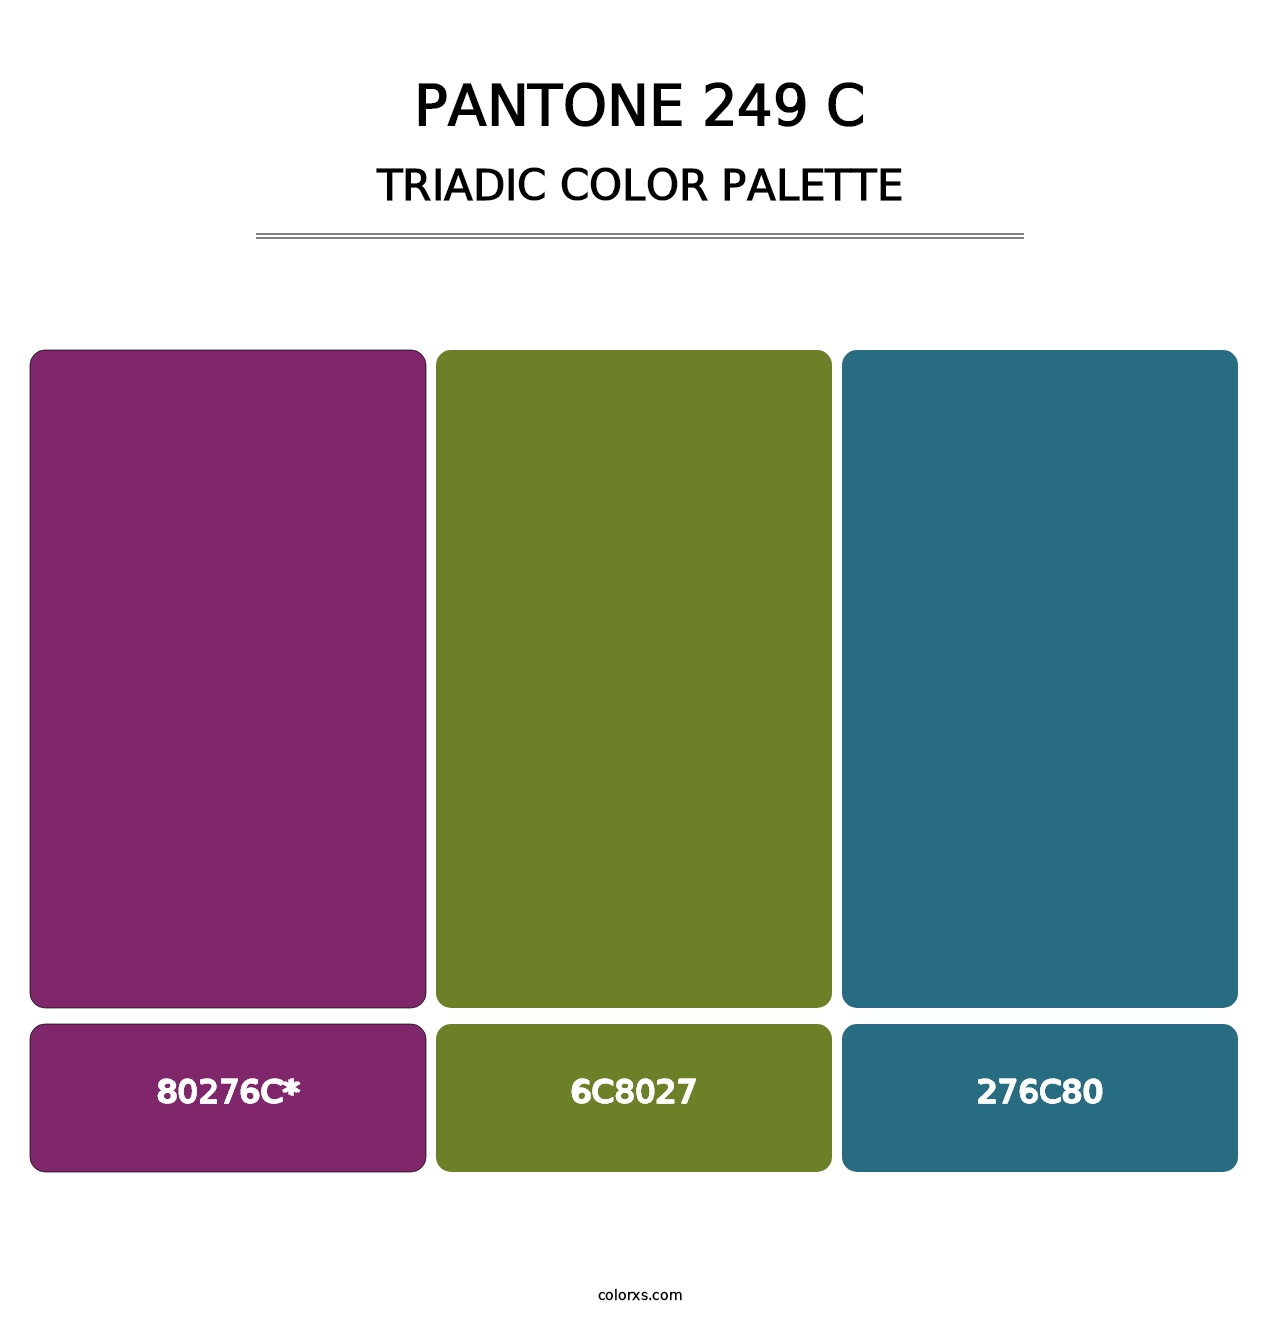 PANTONE 249 C - Triadic Color Palette